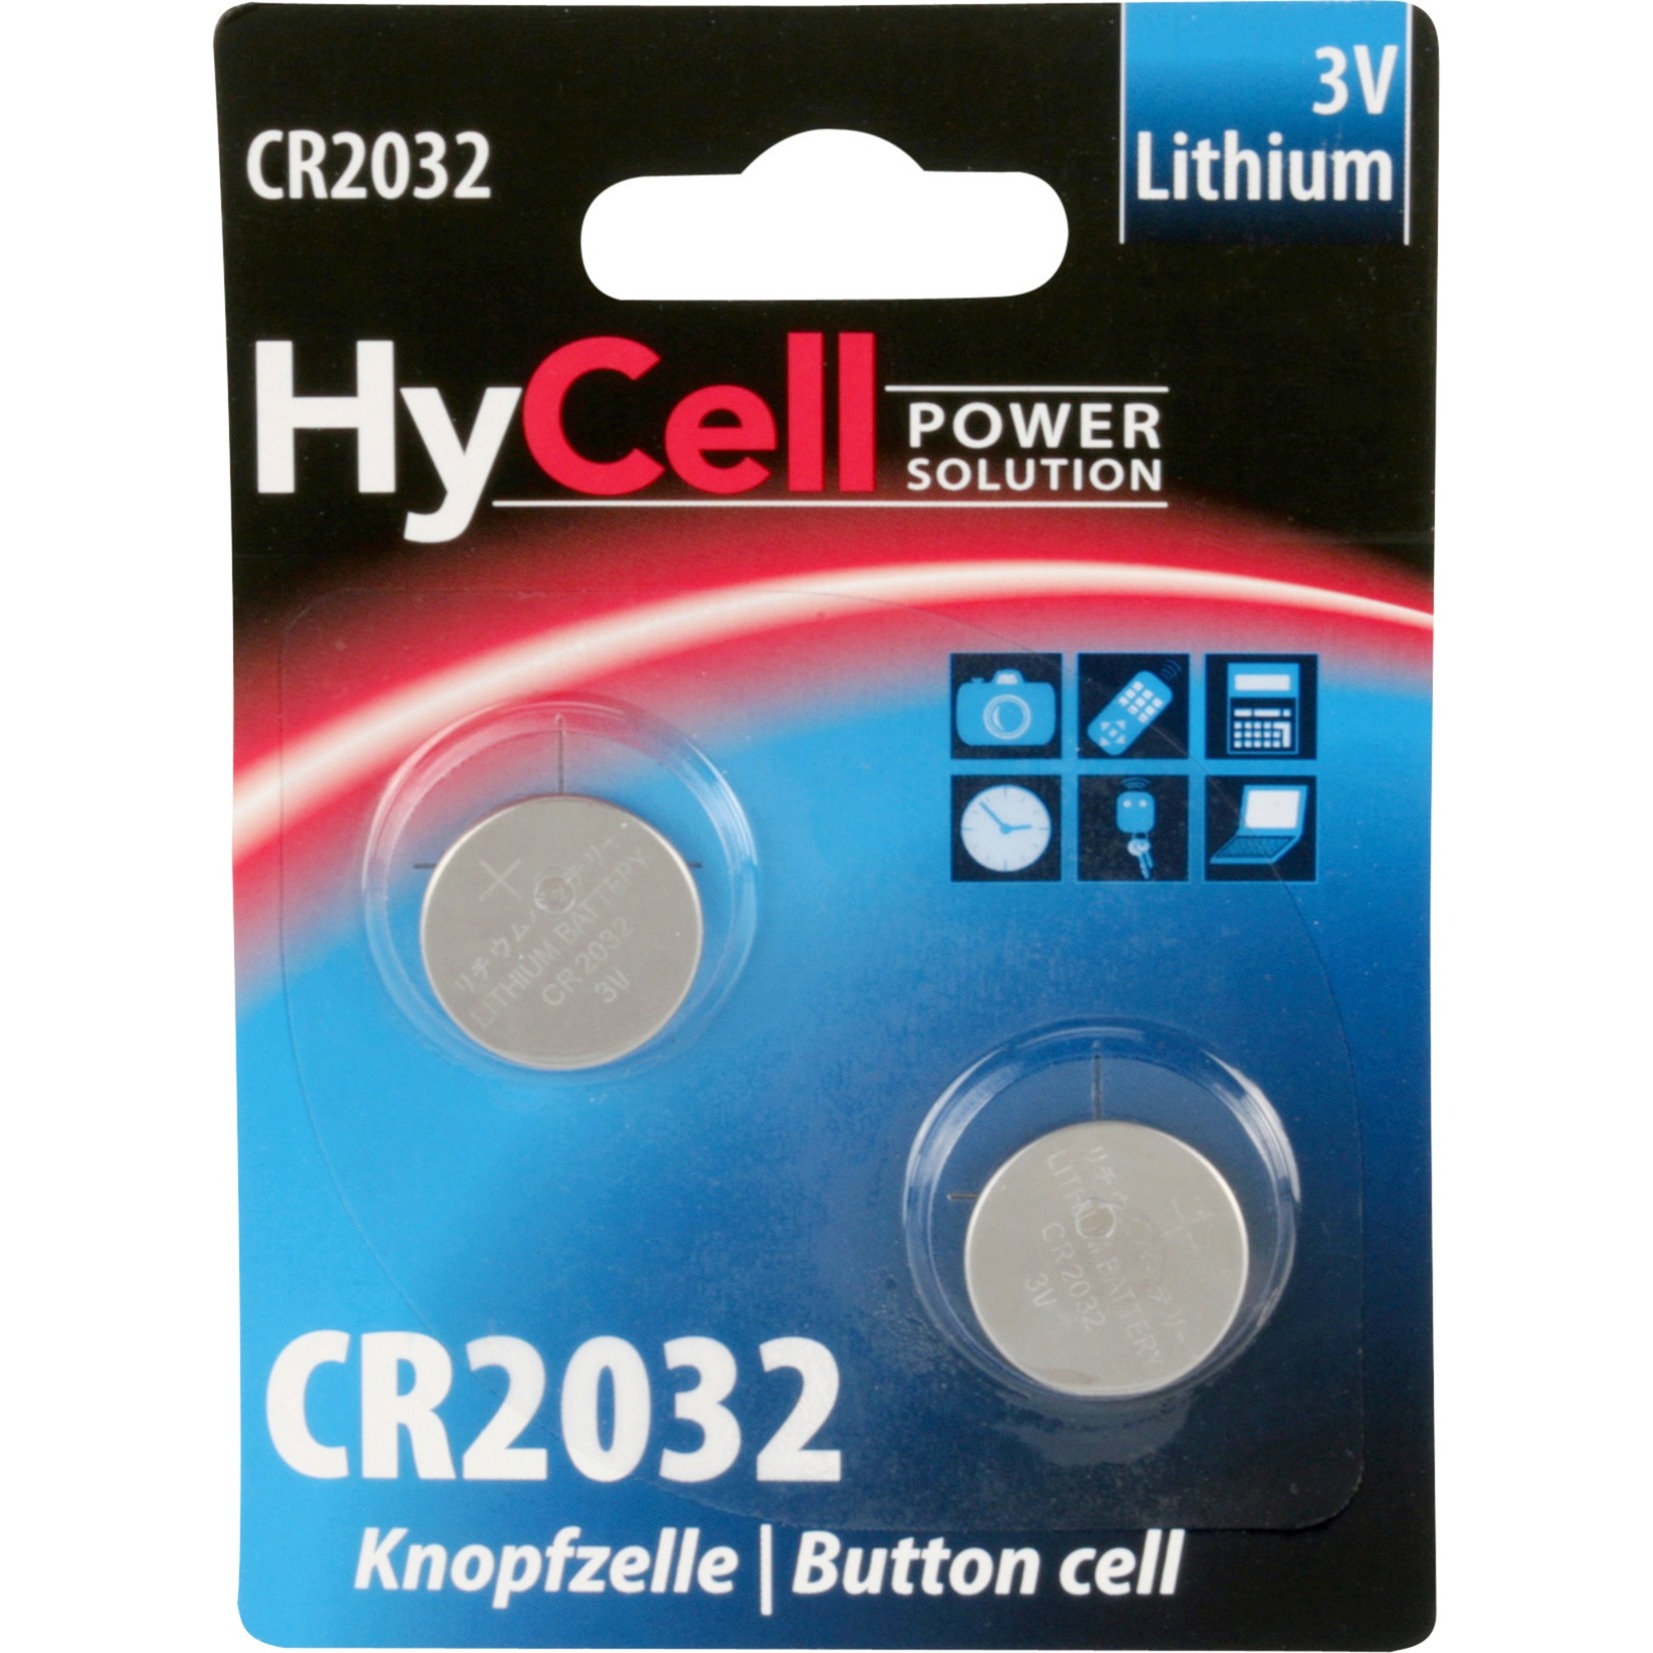 Image of Alternate - Lithium Knopfzelle CR2032, Batterie online einkaufen bei Alternate